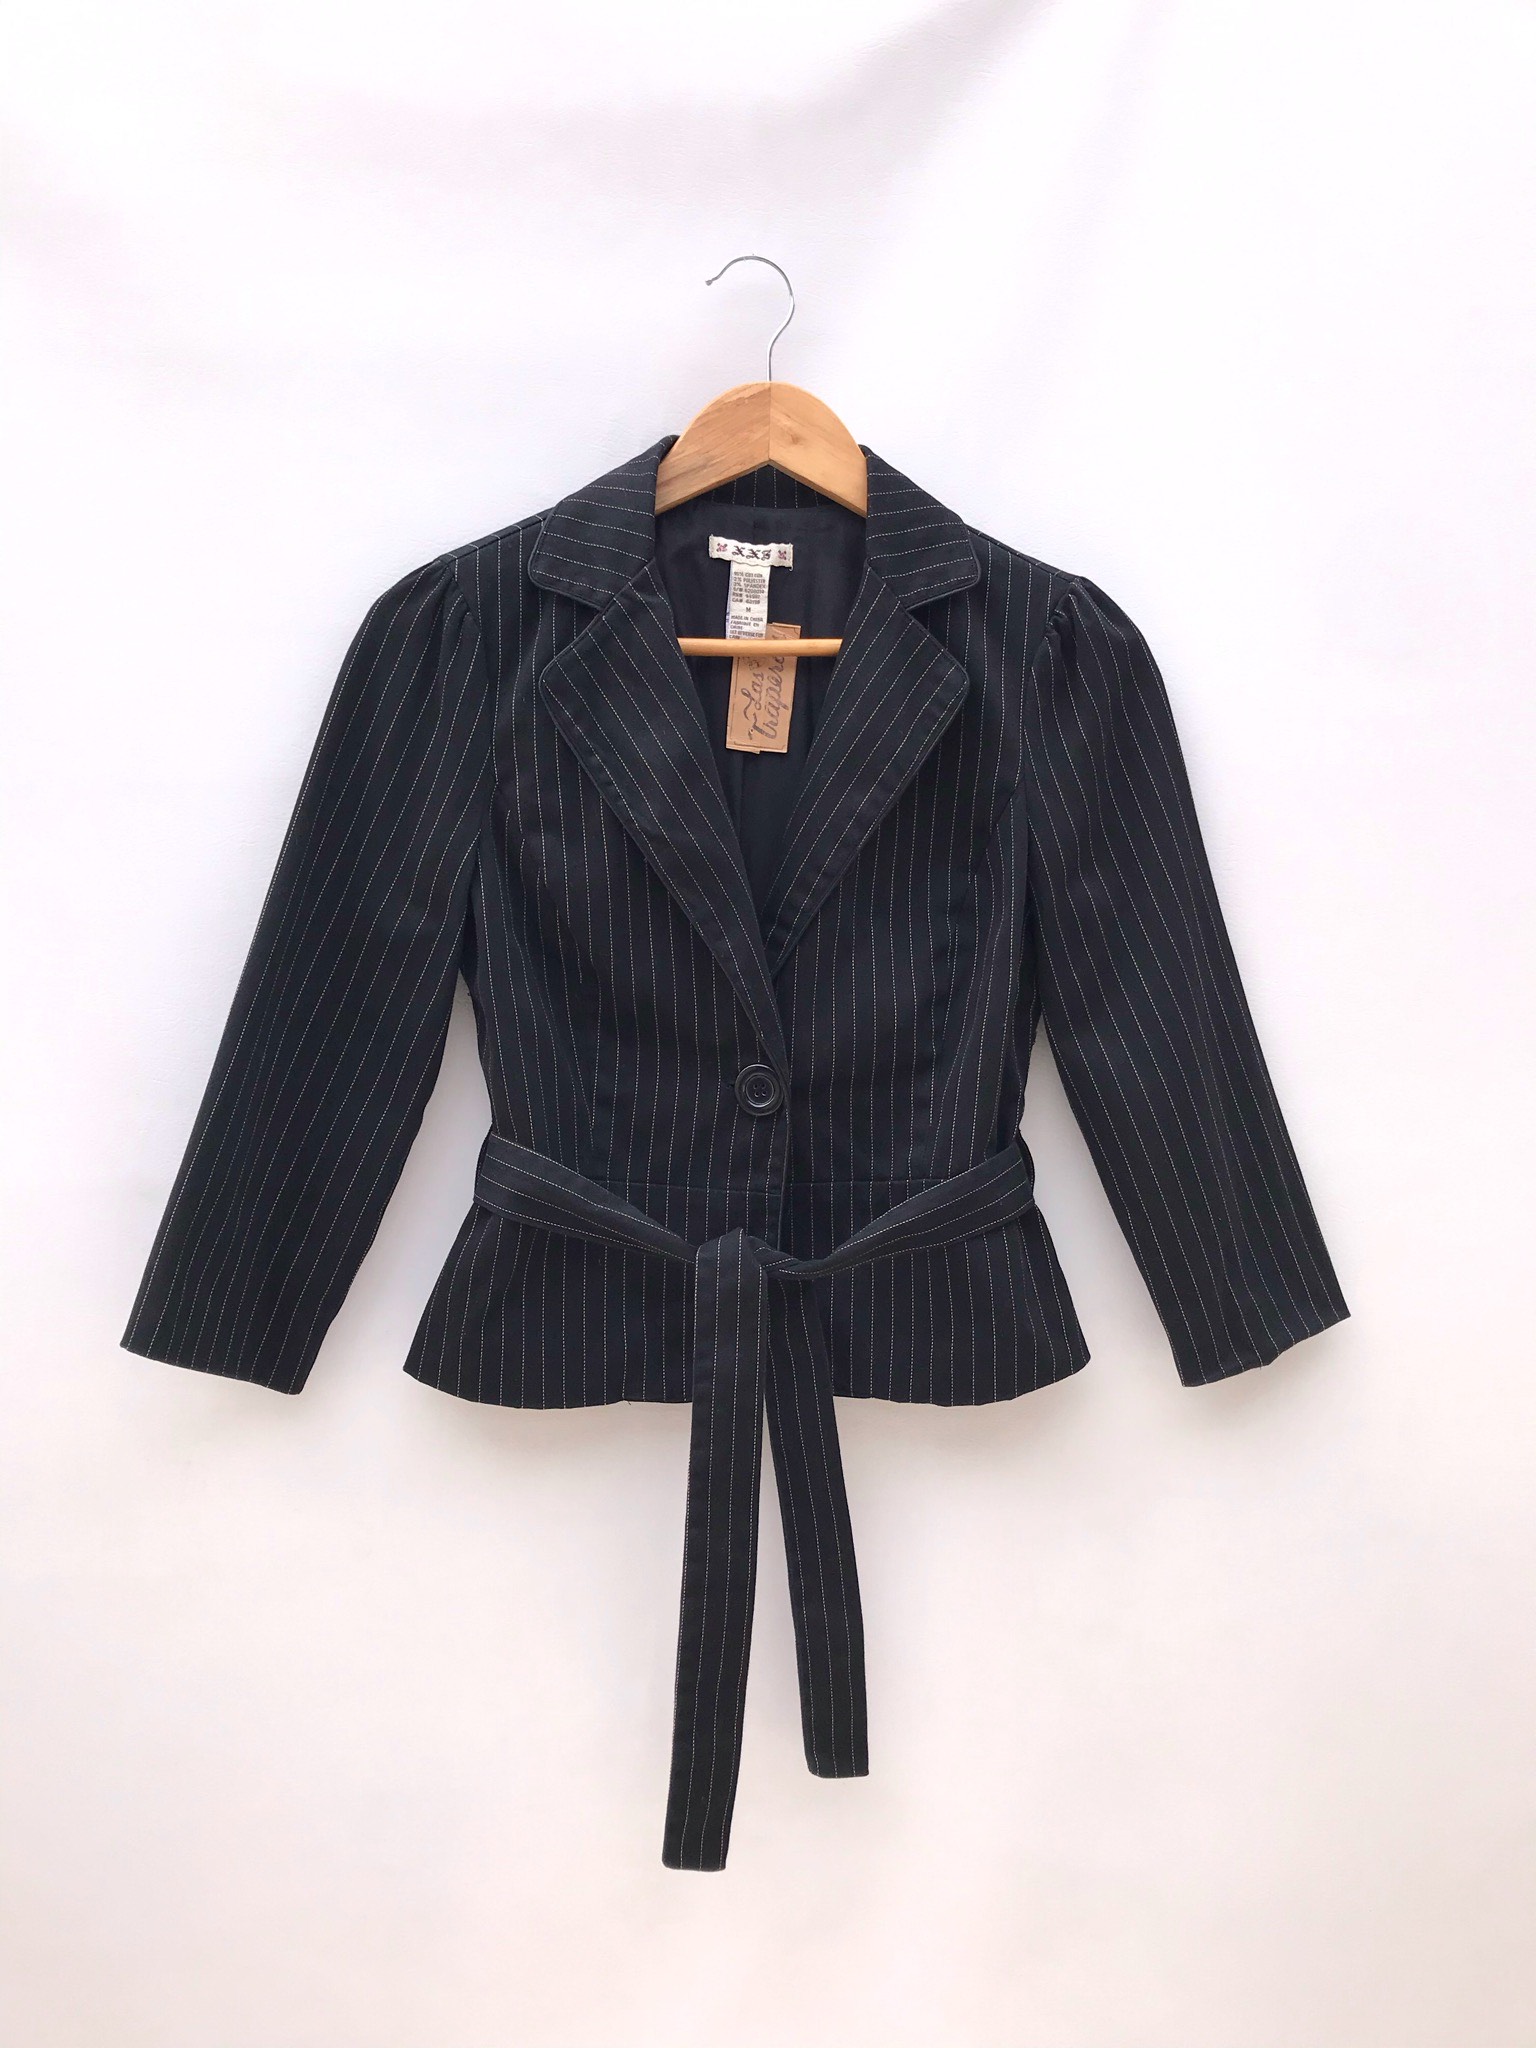 Blazer corto negro con líneas punteadas en tono beige, 95% algodón, un botón, manga 3/4 con botones, cinto para amarrar y lleva forro